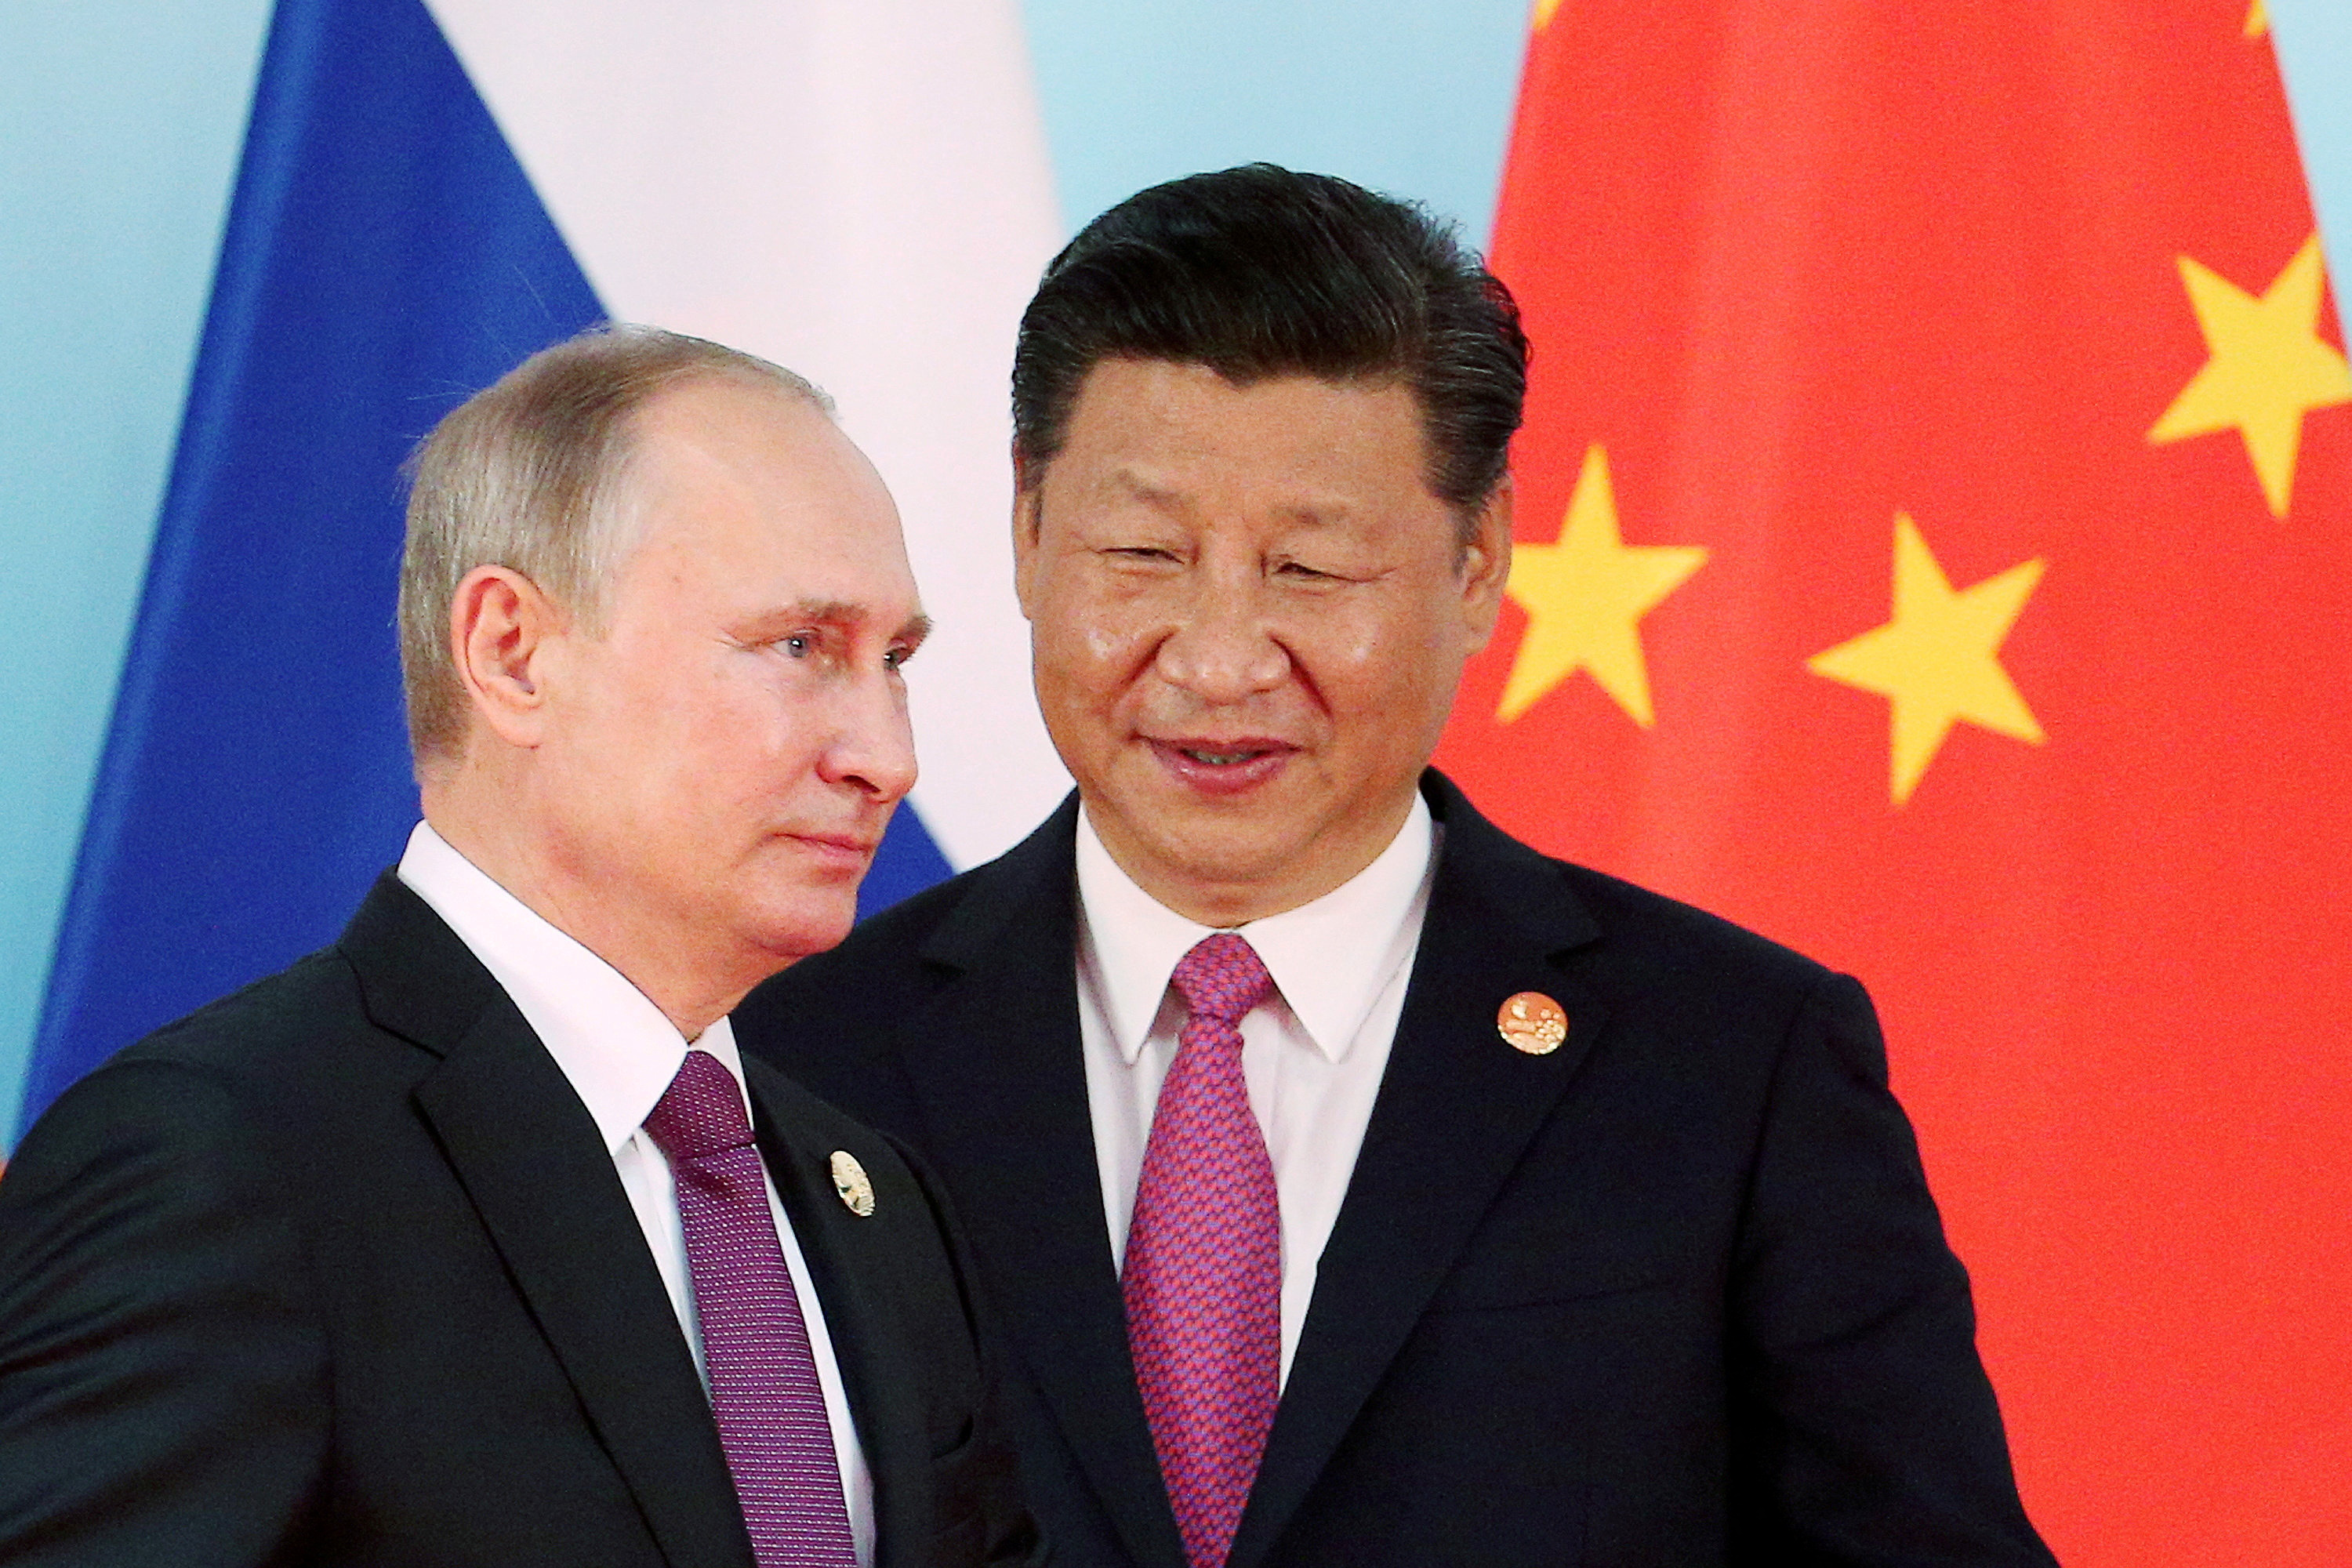 El presidente chino, Xi Jinping (derecha), junto al presidente ruso, Vladimir Putin, cuando llega para una fotografía de grupo durante la Cumbre de los BRICS en Xiamen.